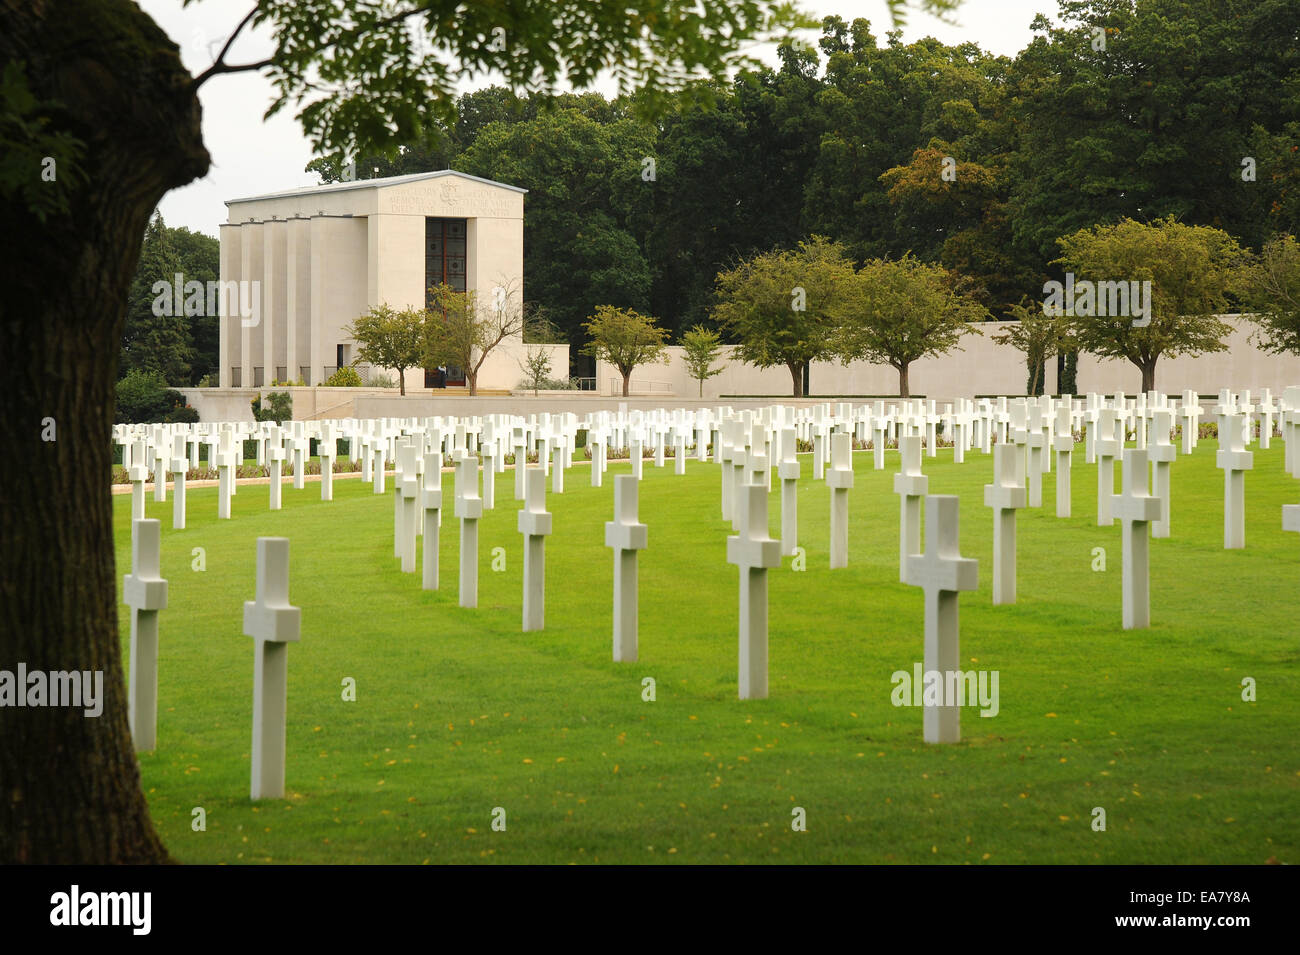 Le marbre blanc des croix à le cimetière militaire américain. Cambridge. L'Angleterre. Le seul cimetière dans le Royaume-Uni pour des soldats américains Banque D'Images